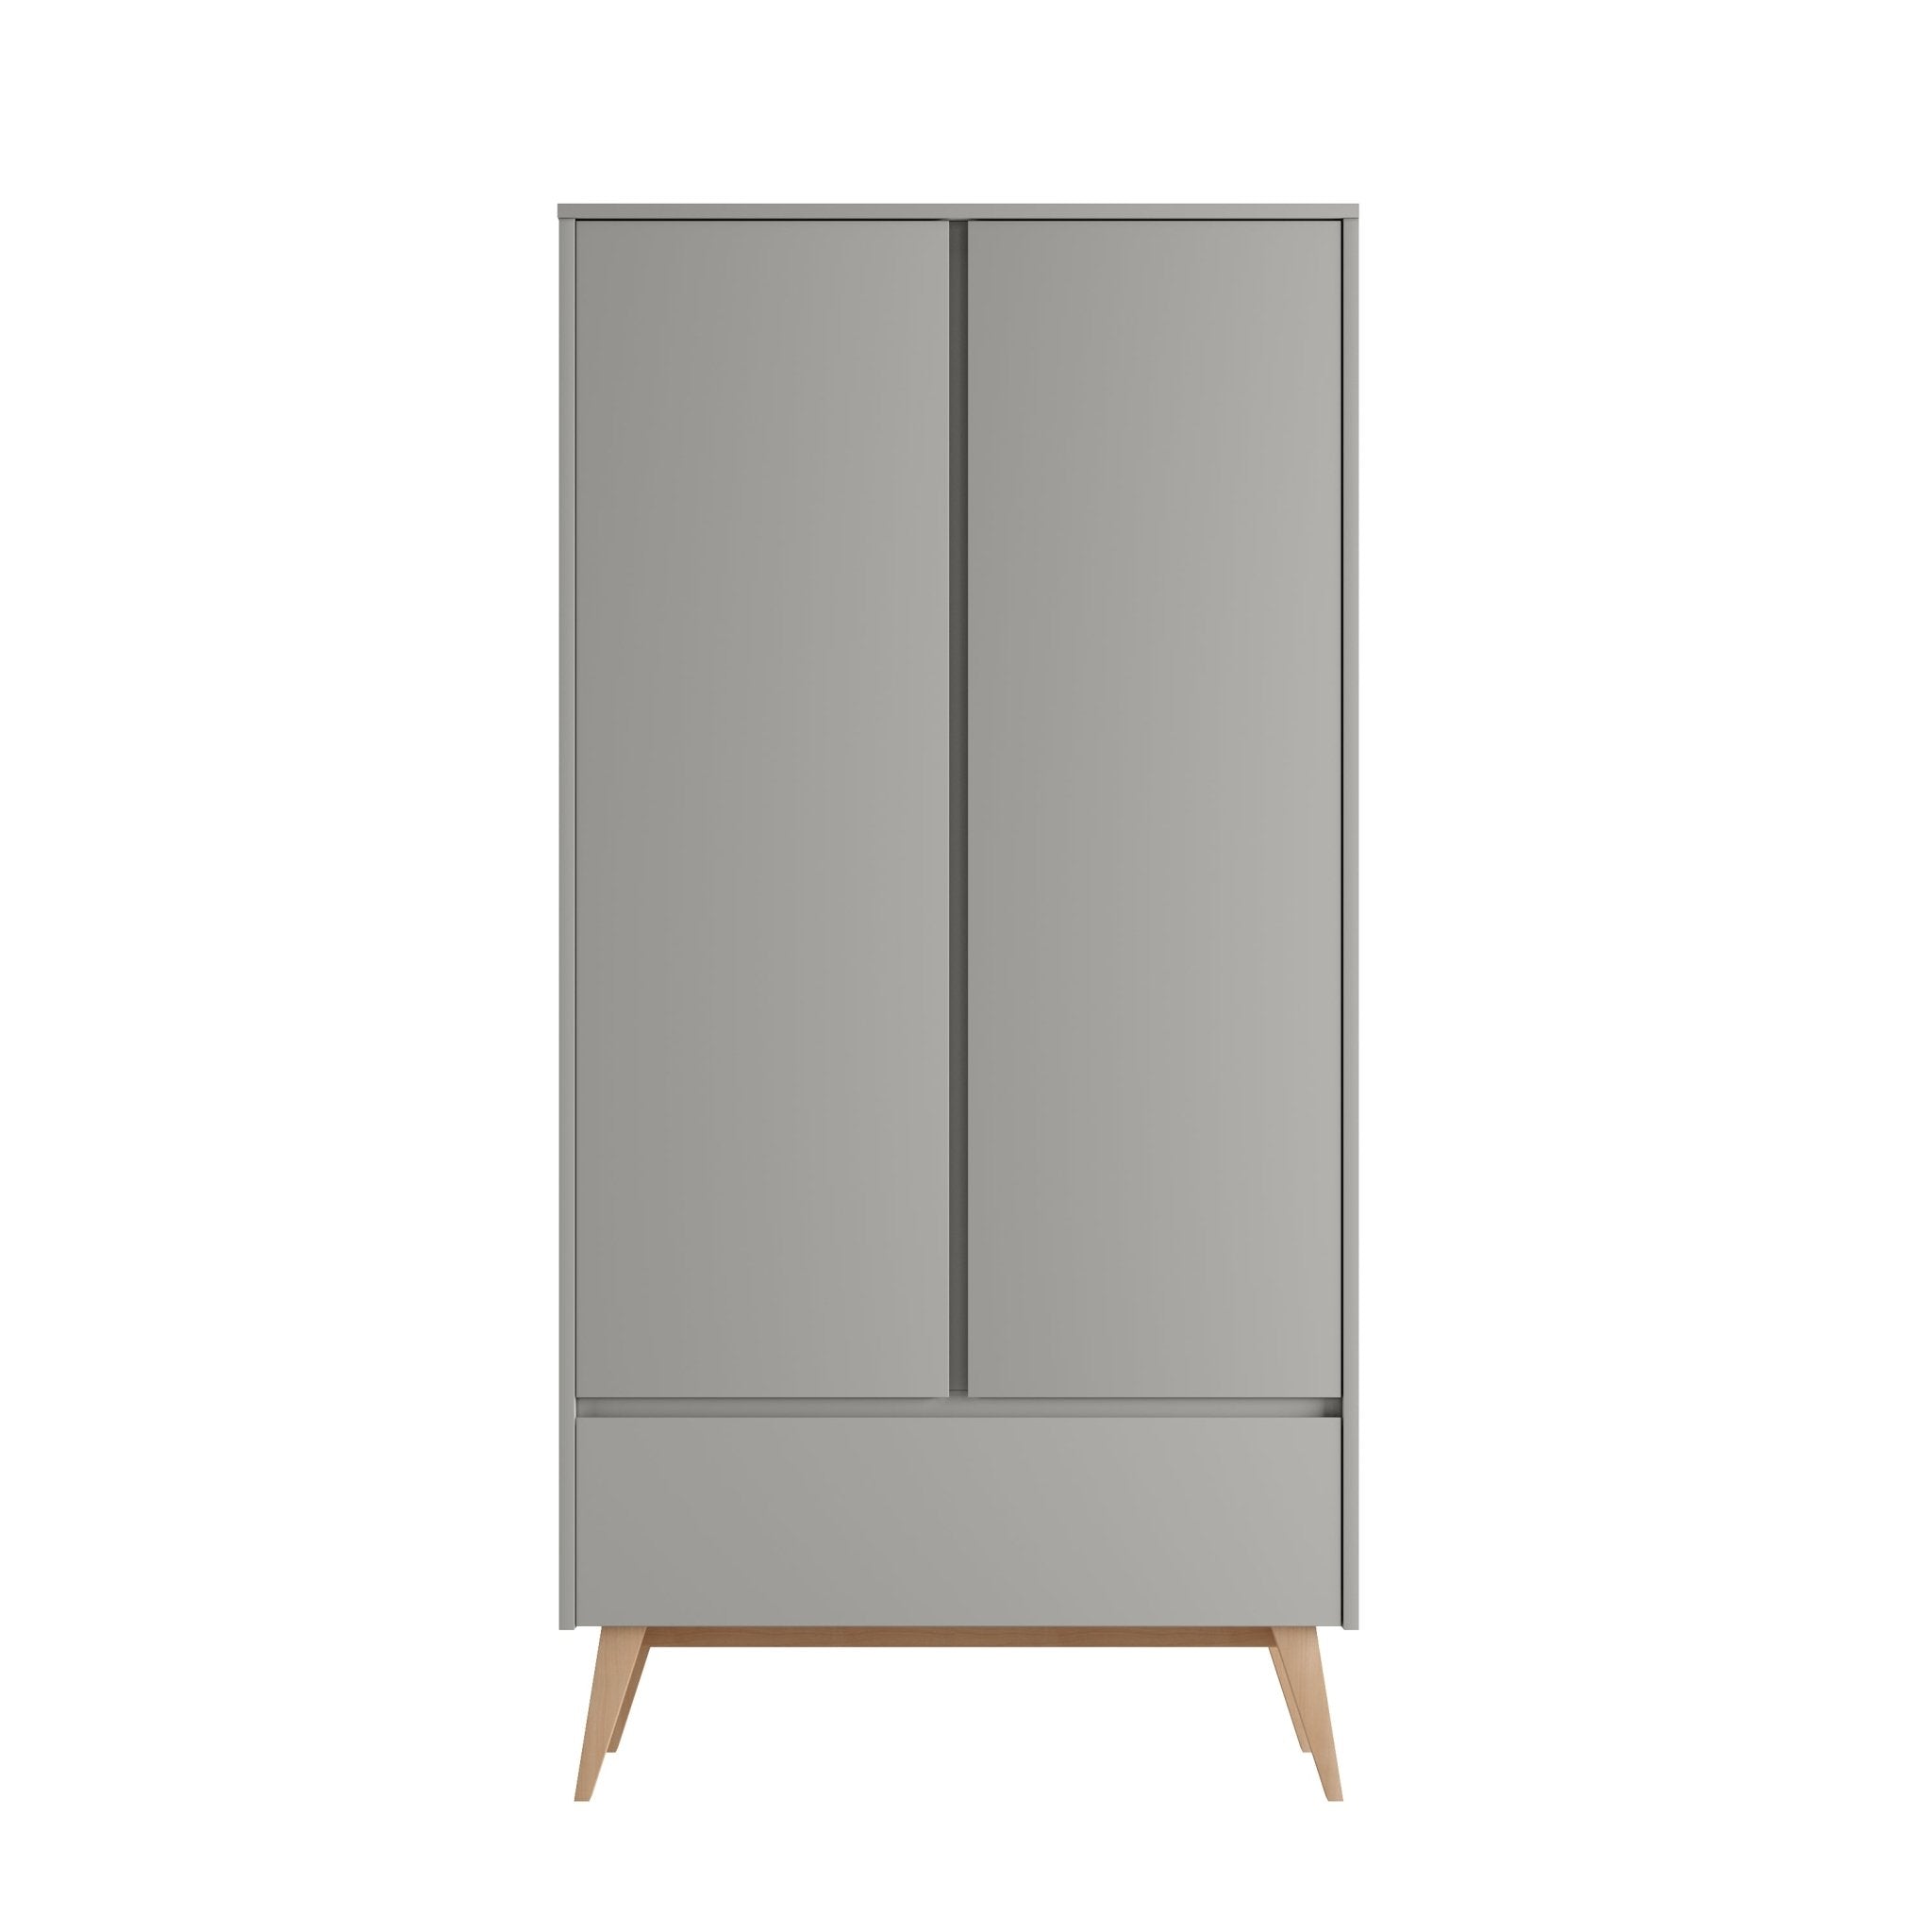 Saga 2-door wardrobe + 1 drawer wardrobe Grey color - Scandinavian Stories by Marton